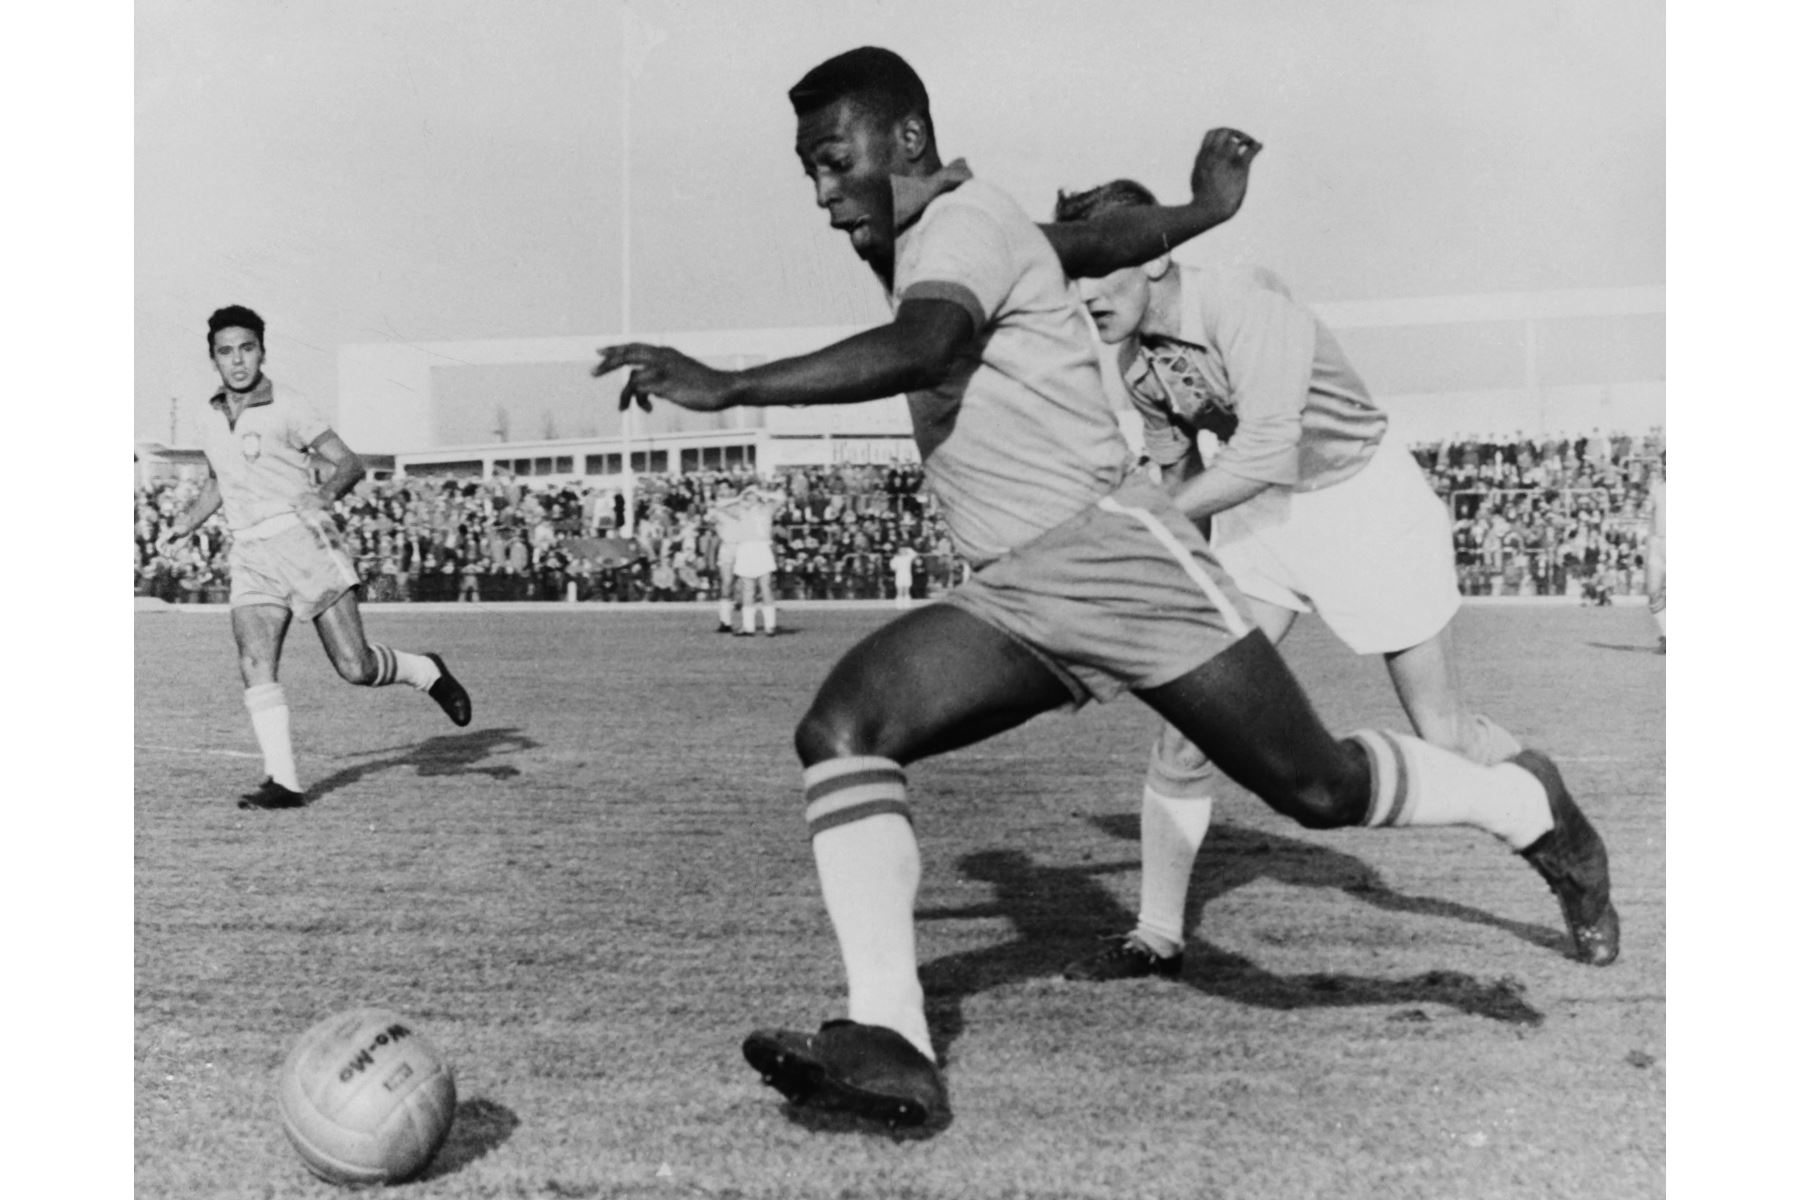 Delantero brasileño Pelé regatea a un defensor durante un partido amistoso entre Malmoe y Brasil, el 8 de mayo de 1960 en Malmoe. - Pelé anotó dos goles. "Pelé", que murió este jueves a los 82 años, víctima de un cáncer. Foto: AFP